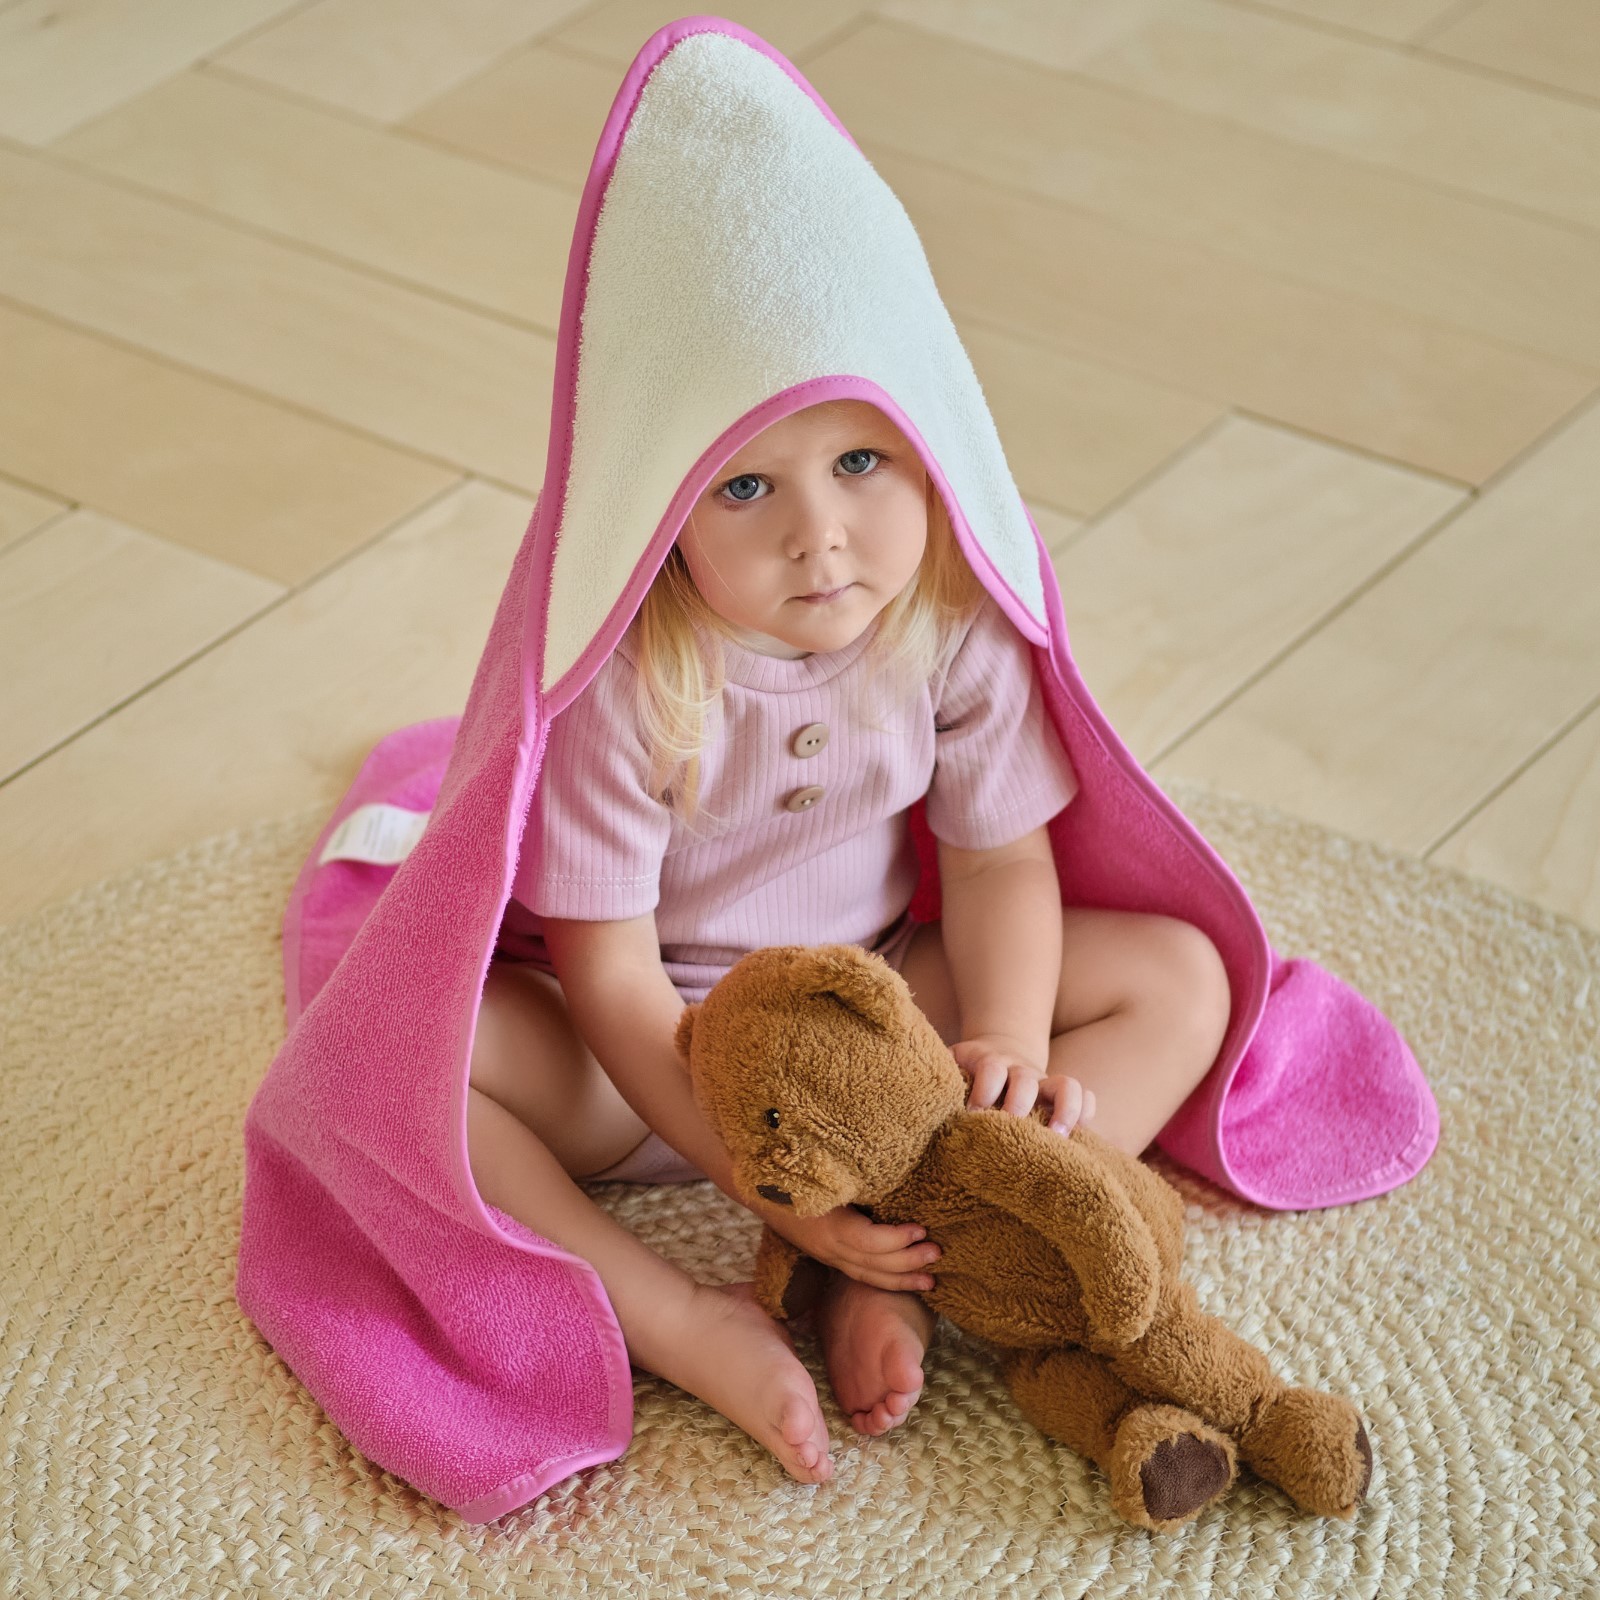 Детское полотенце Katrin цвет: молочный, розовый (75х75 см), размер 75х75 см